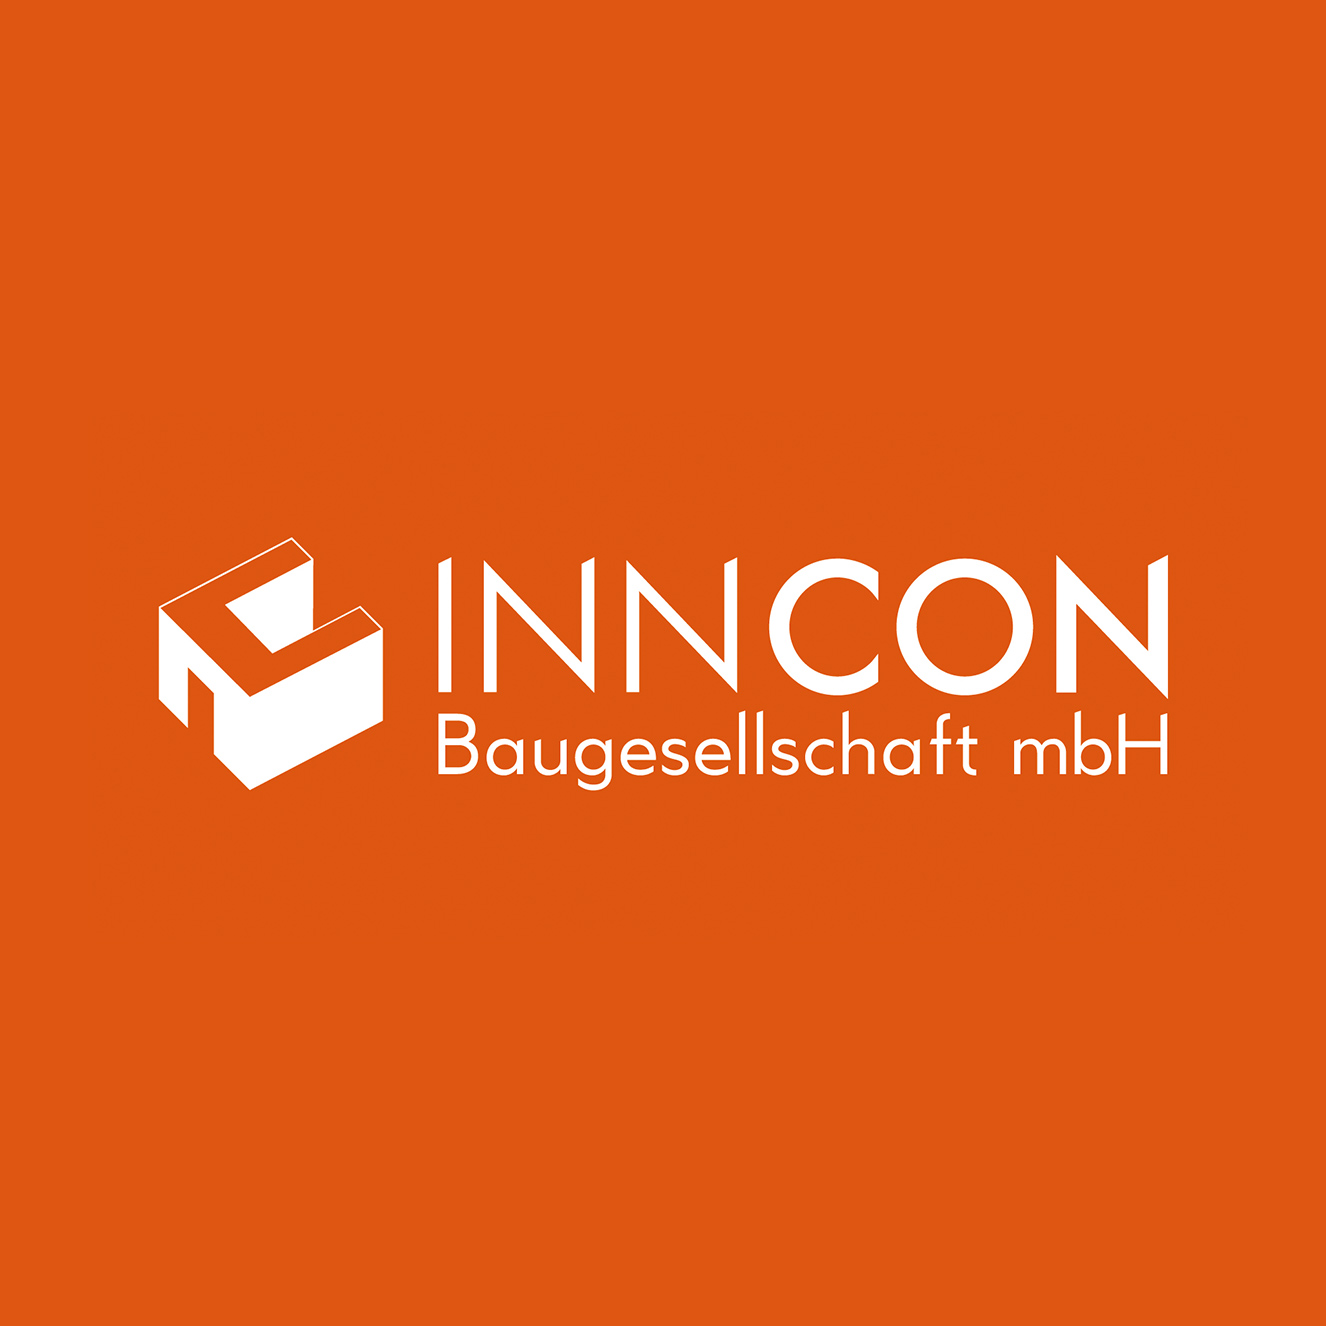 InnCon Corporate Design Logo